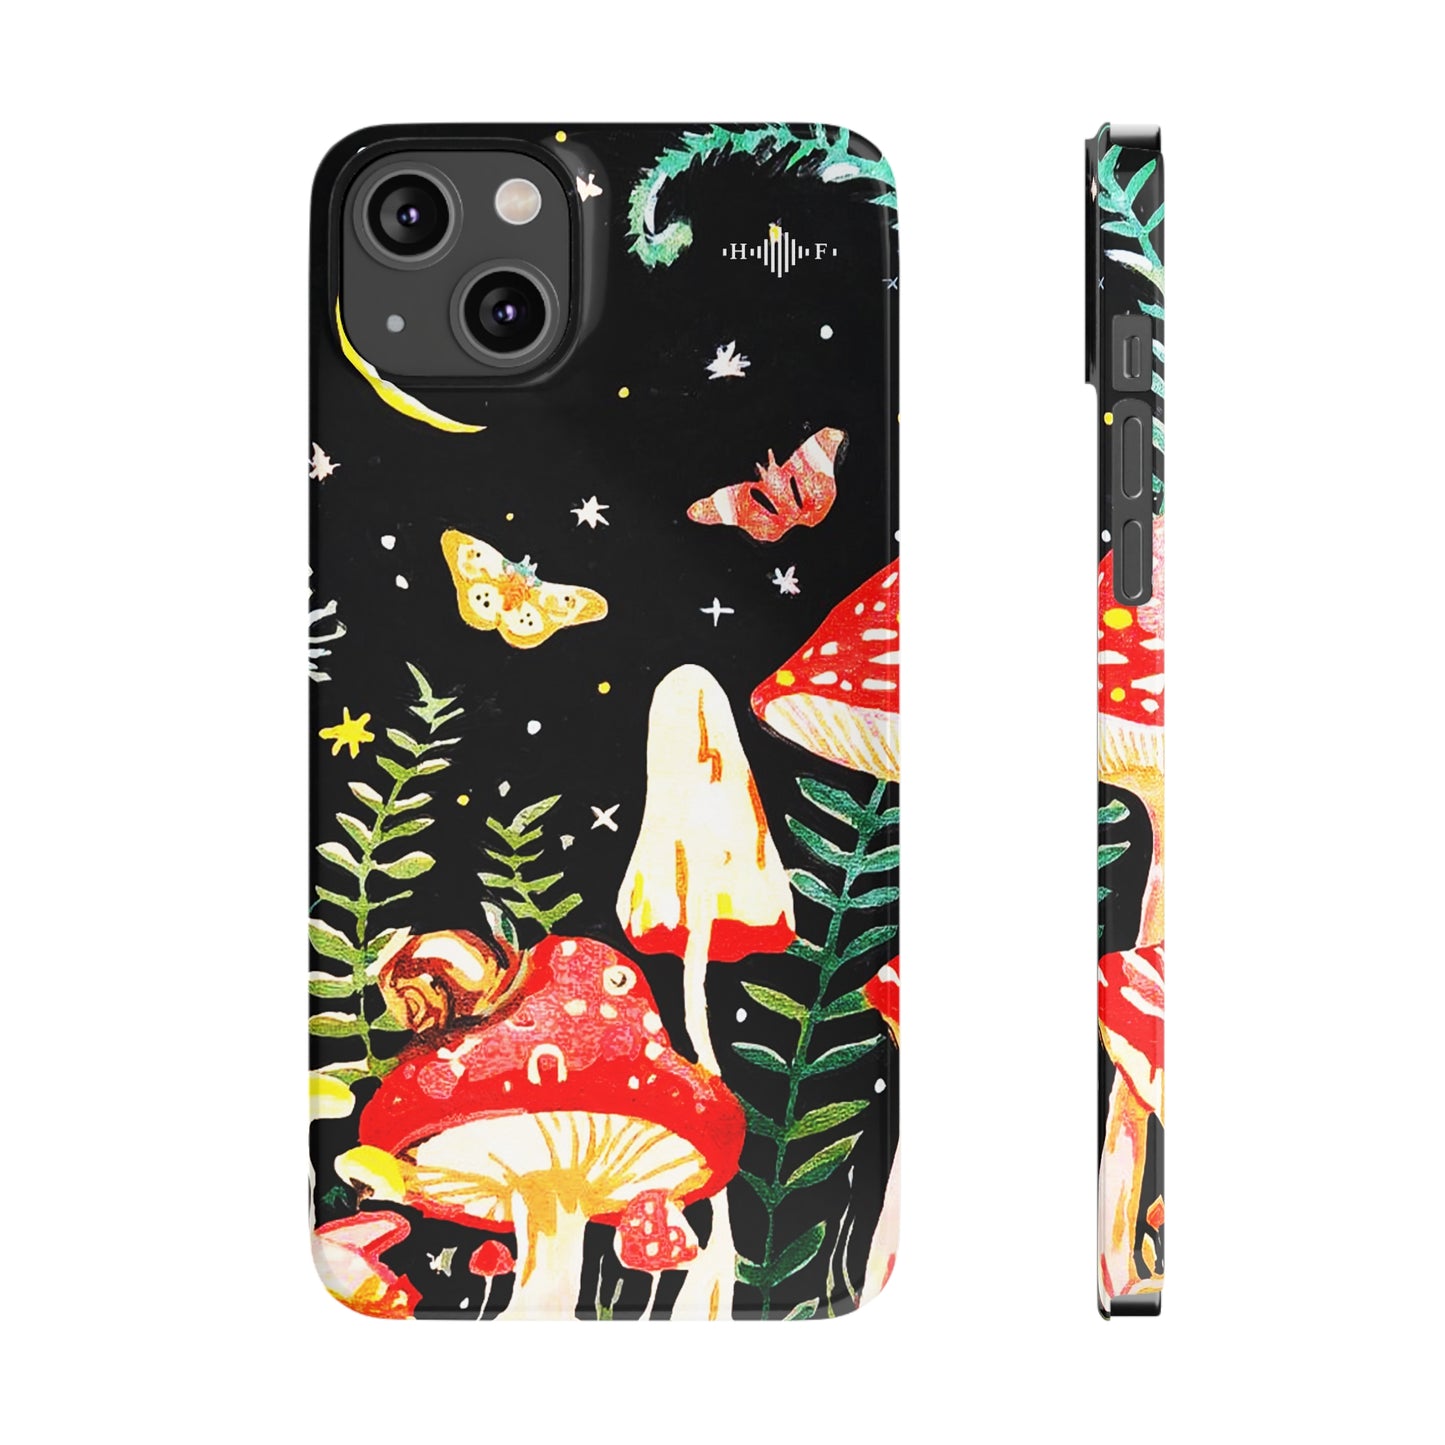 Mushroom Nights Slim Phone Cases